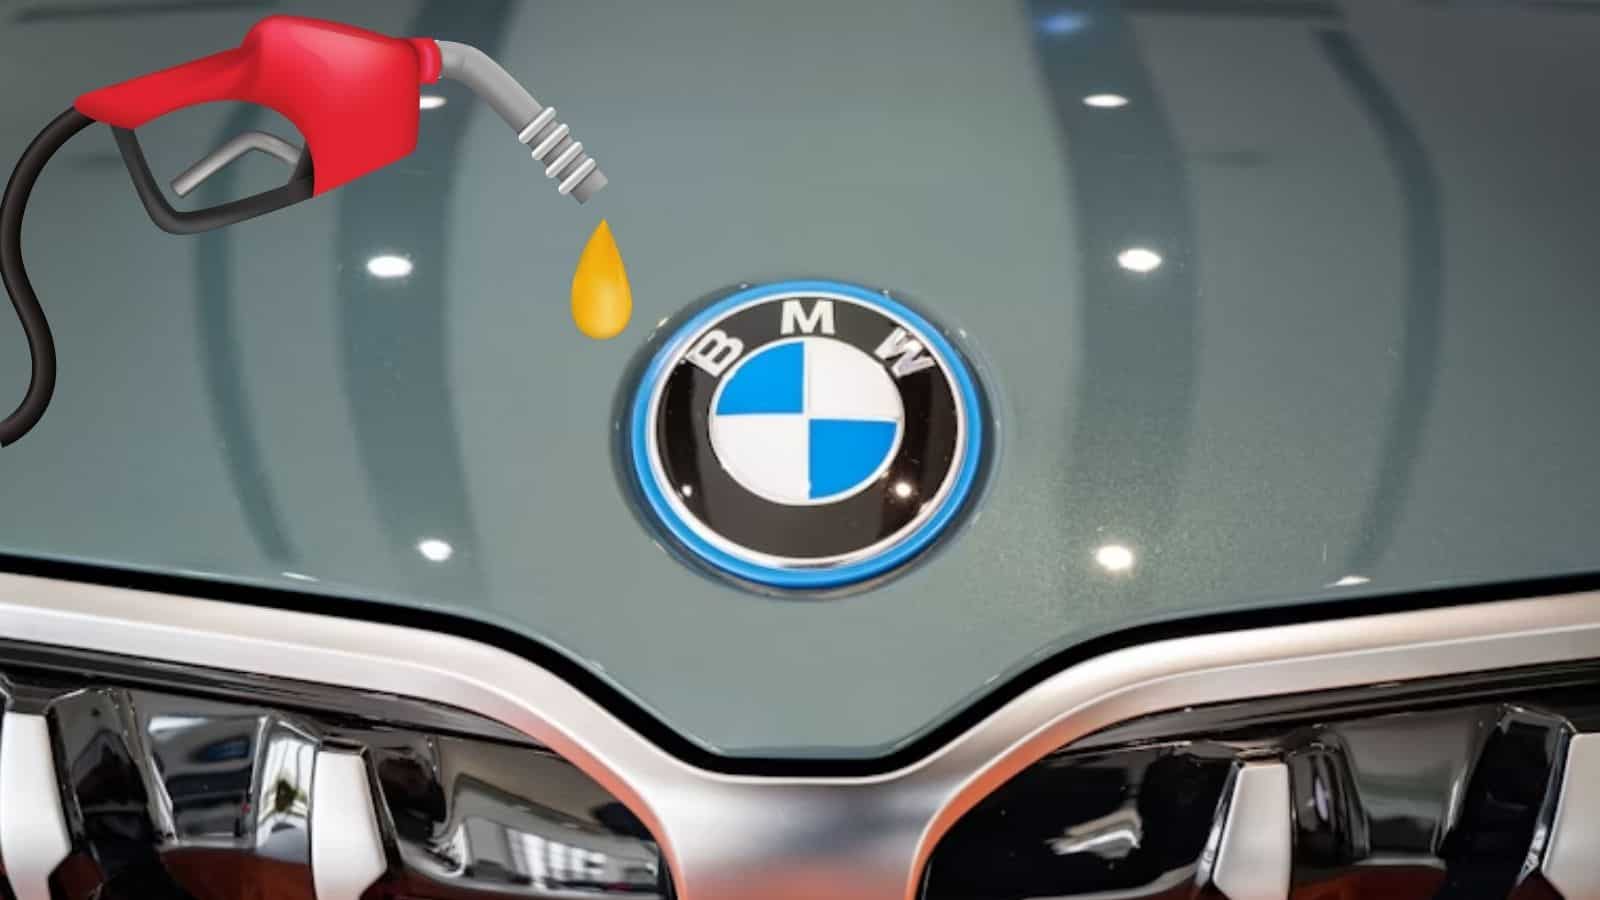 BMW, futuro incerto per le auto a diesel: probabile abbandono